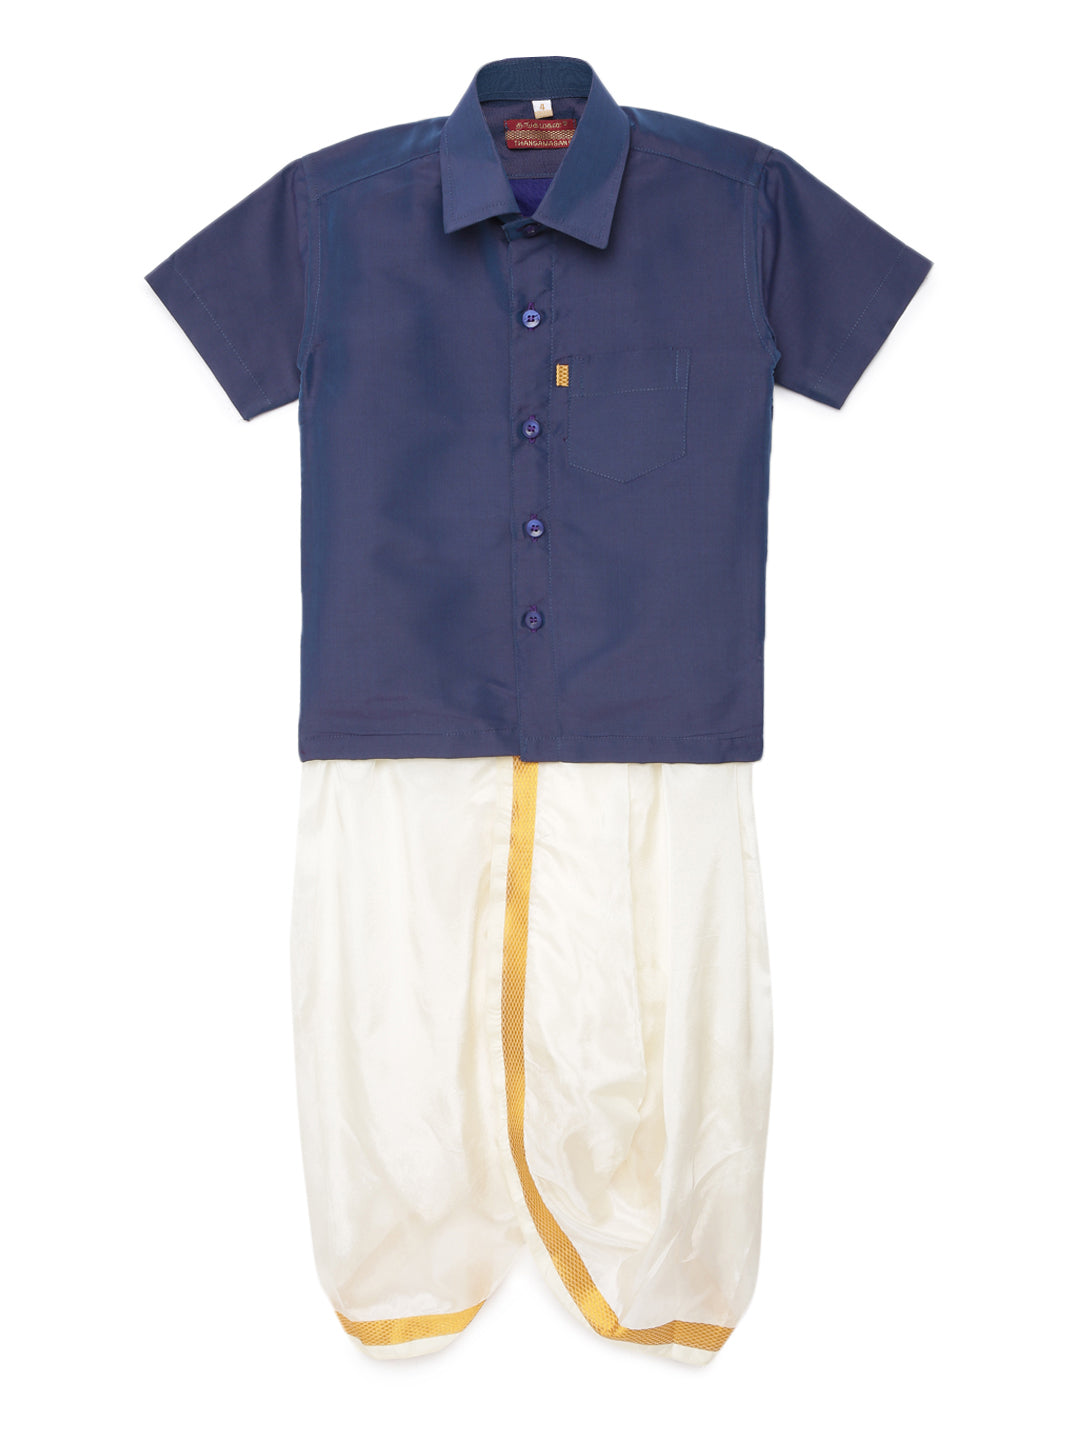 36. Boys Panjagajam & Shirt Set